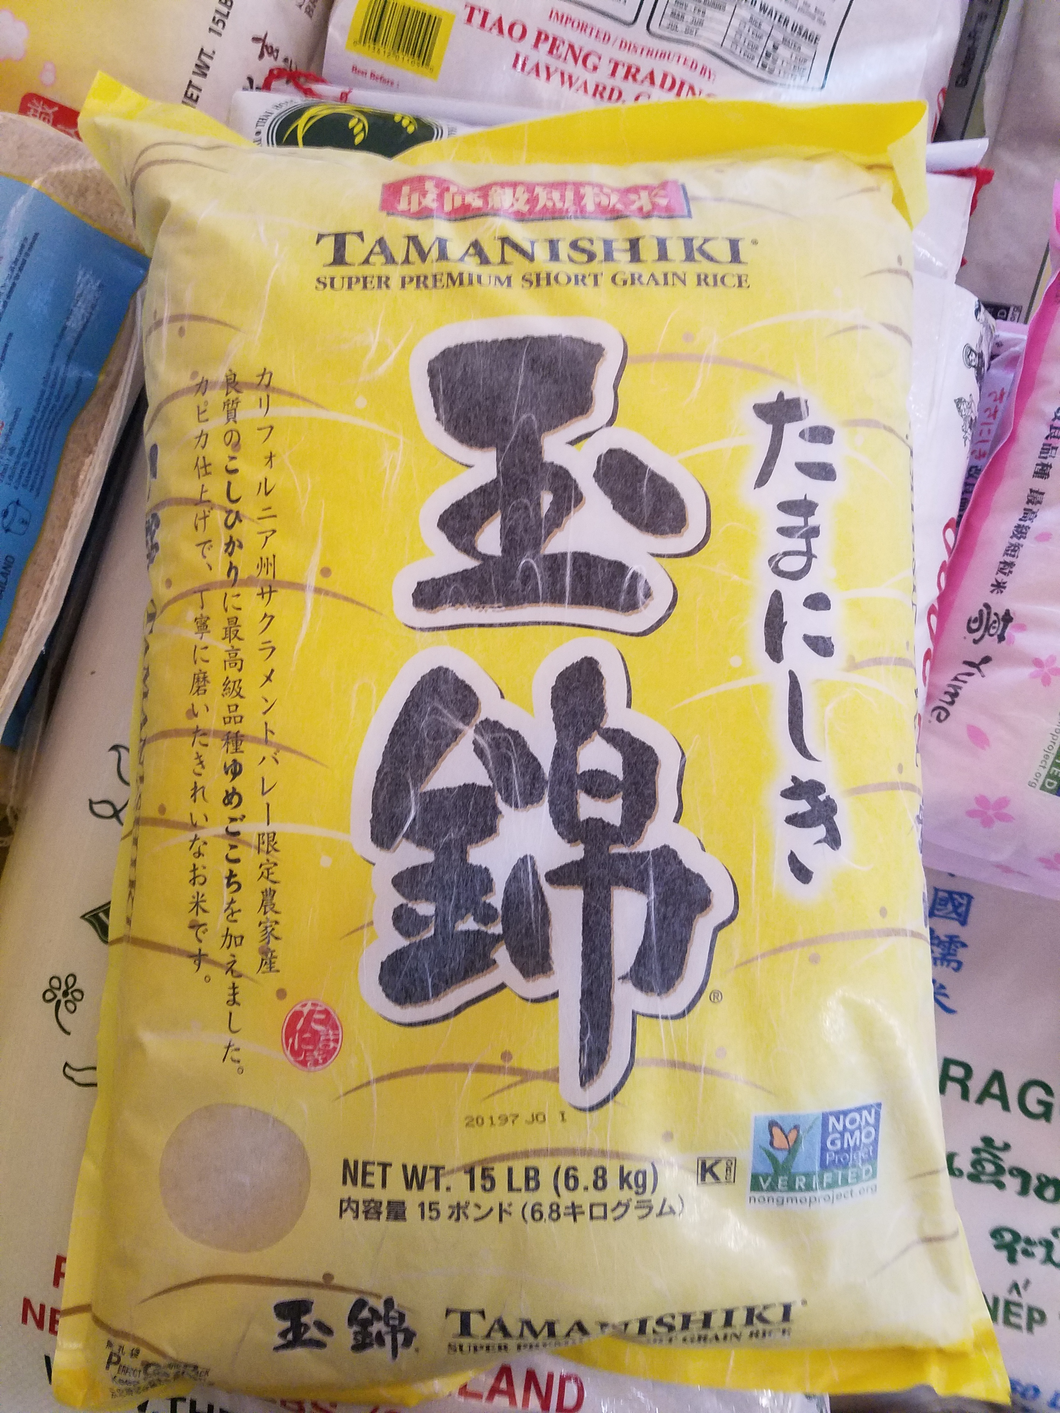 Tamanishiki Premium Short Grain Rice